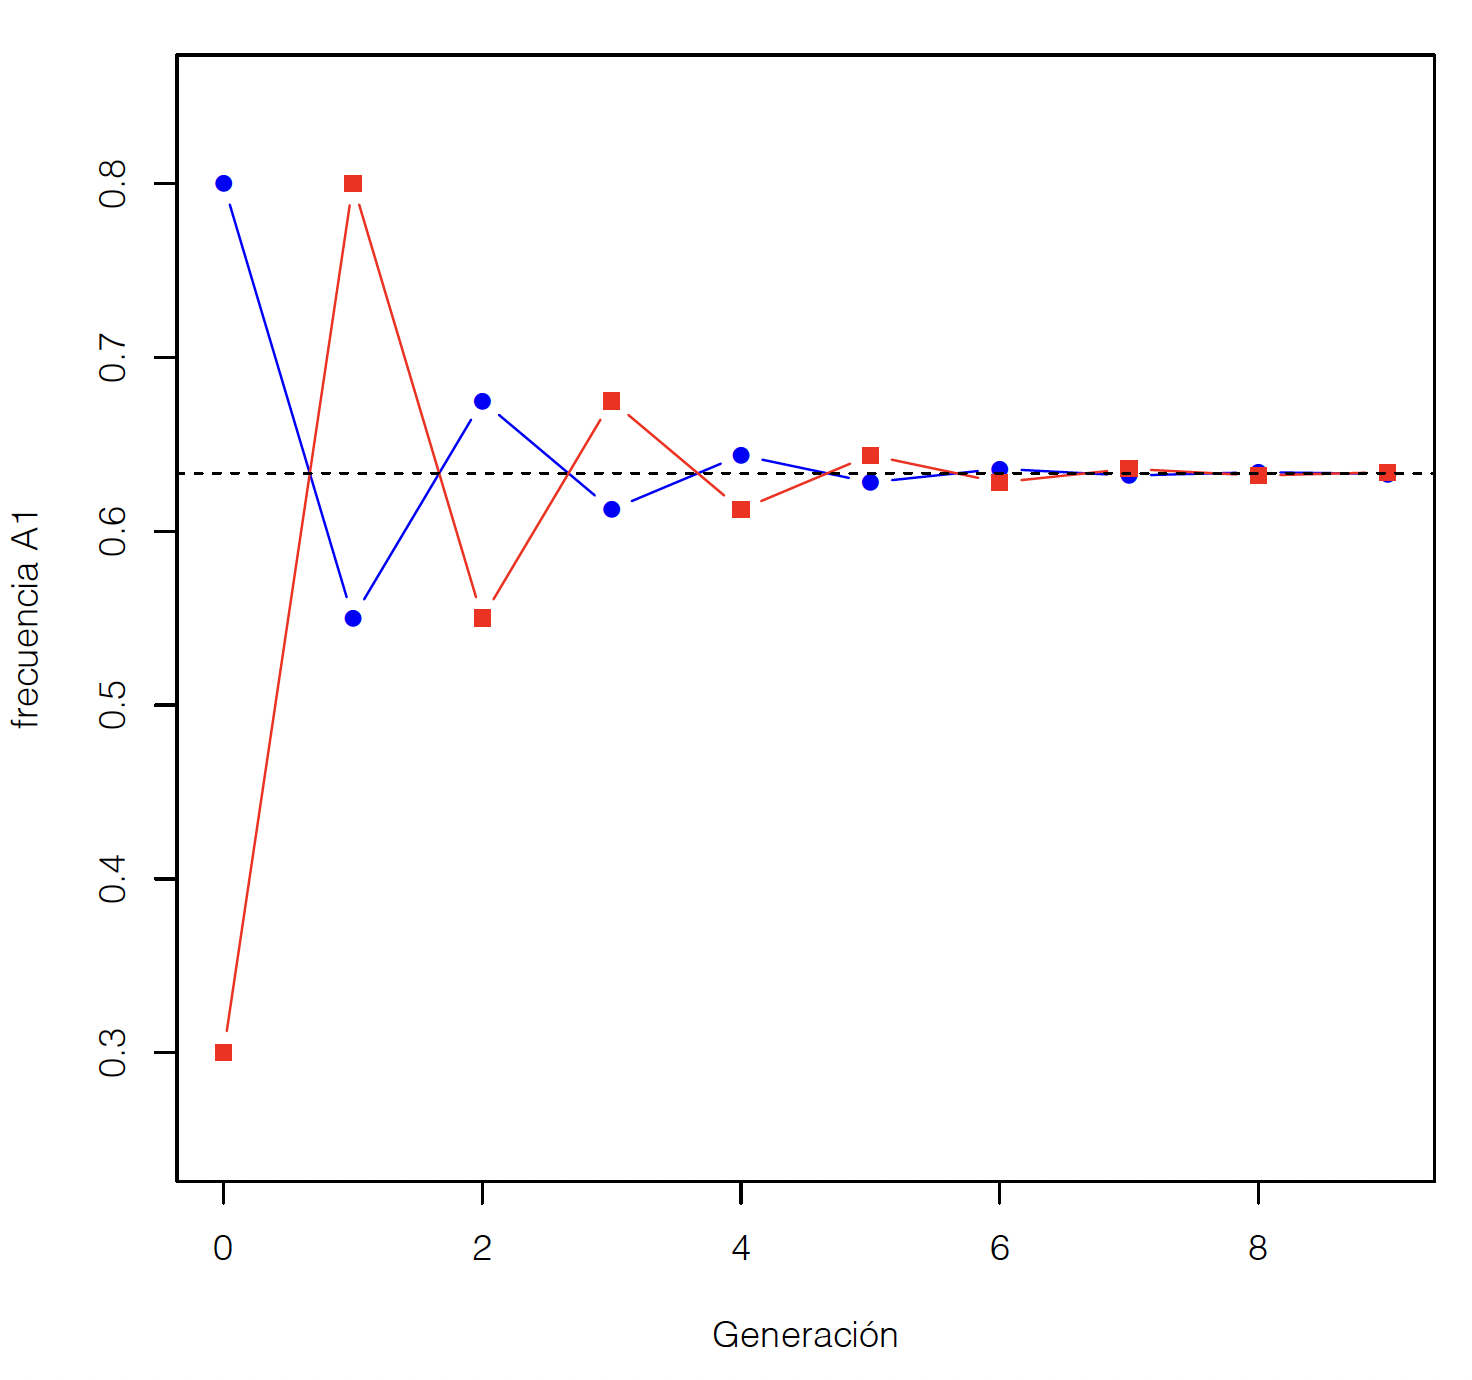 Evolución de las frecuencias alélicas en machos (cuadrados rojos) y hembras (círculos azules) en un locus perteneciente al cromosoma X en especies en que el Y determina el sexo. La línea a trazos negros representa la media de la población. Las frecuencias de partida (generación 0) son $p_{M}=0,3$ y $p_{H}=0,8$.